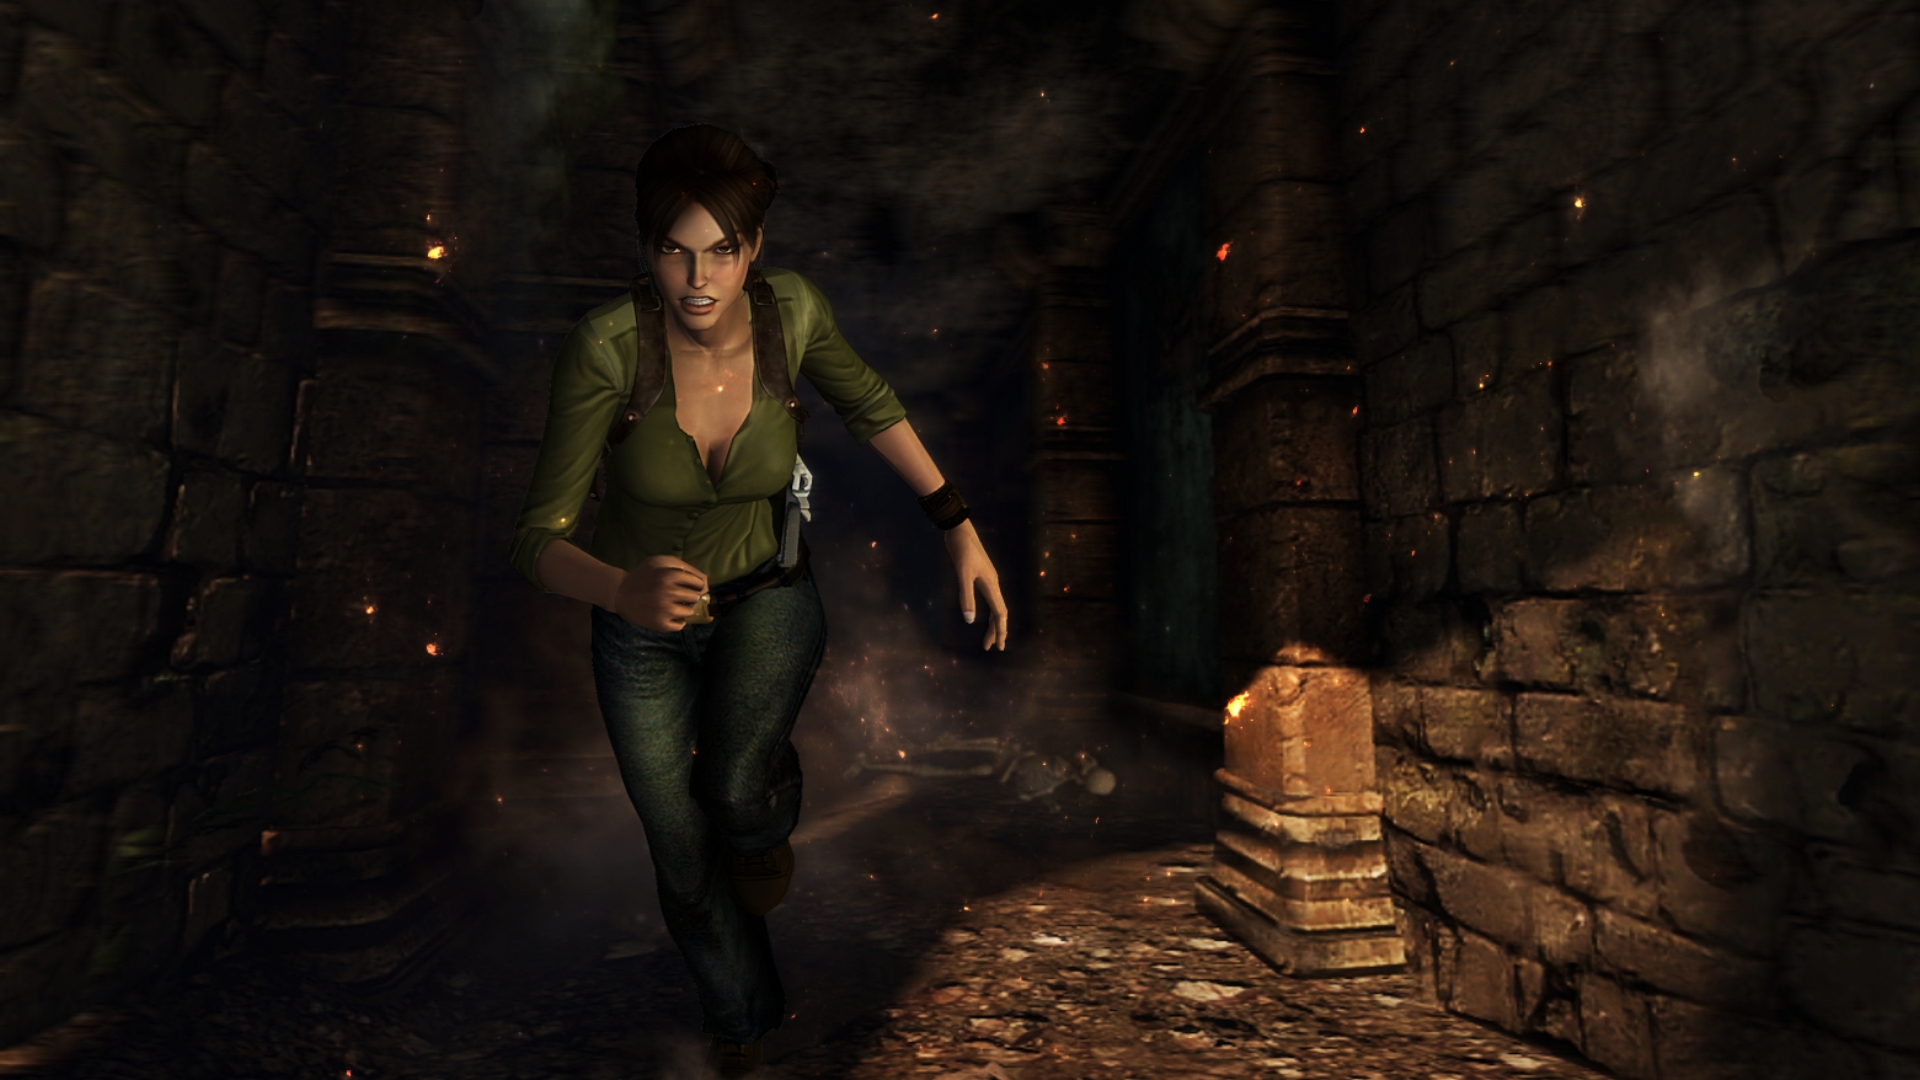 Скачать обои бесплатно Лара Крофт Расхитительница Гробниц (Lara Croft: Tomb Raider), Игры картинка на рабочий стол ПК